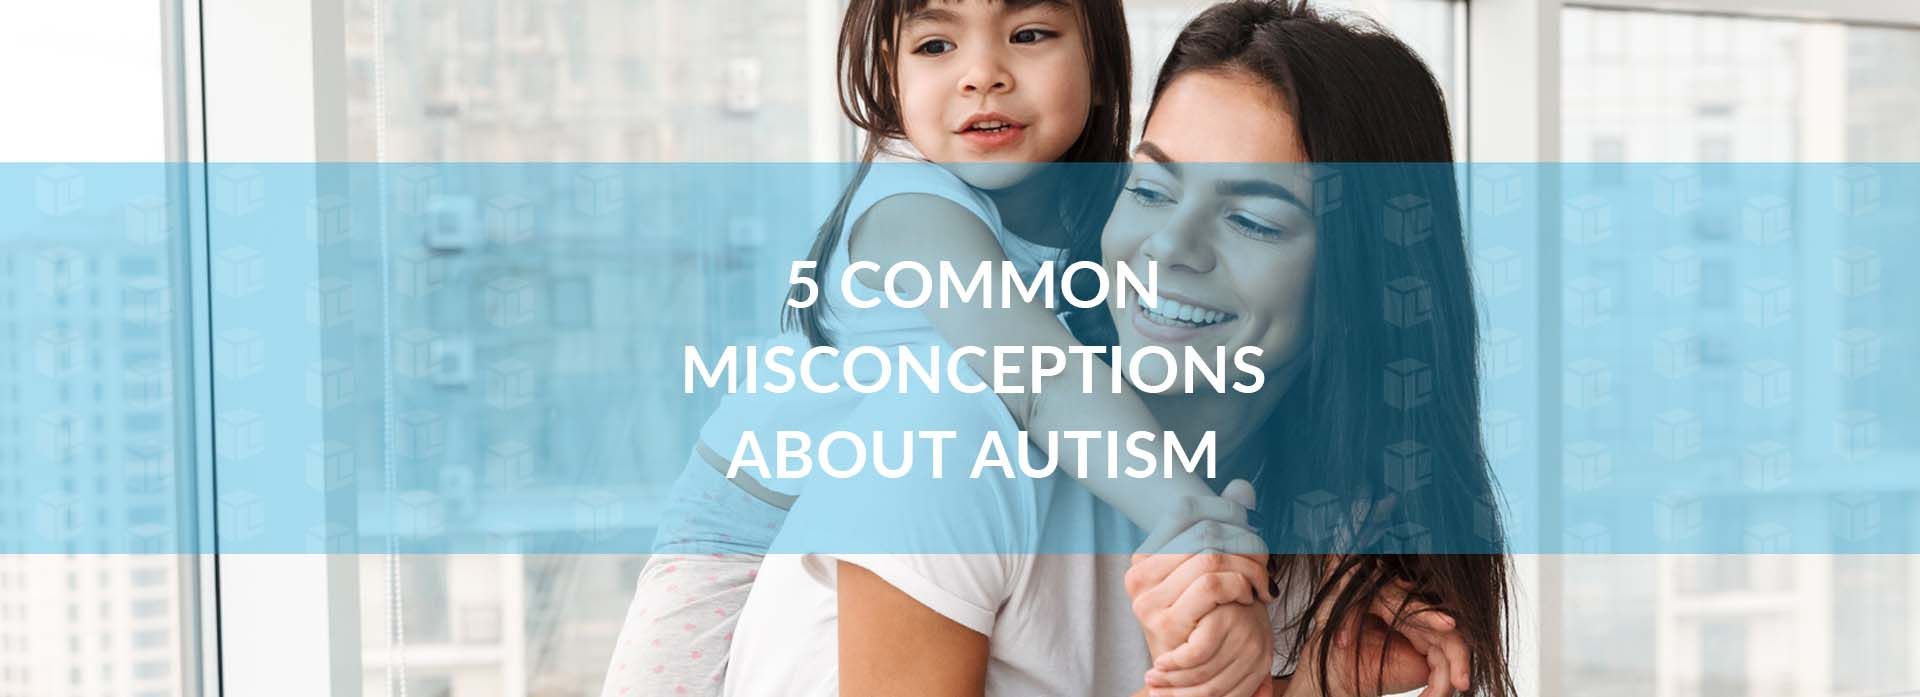 Misconceptions about autism Misconceptions about autism Misconceptions about autism Misconceptions about autism